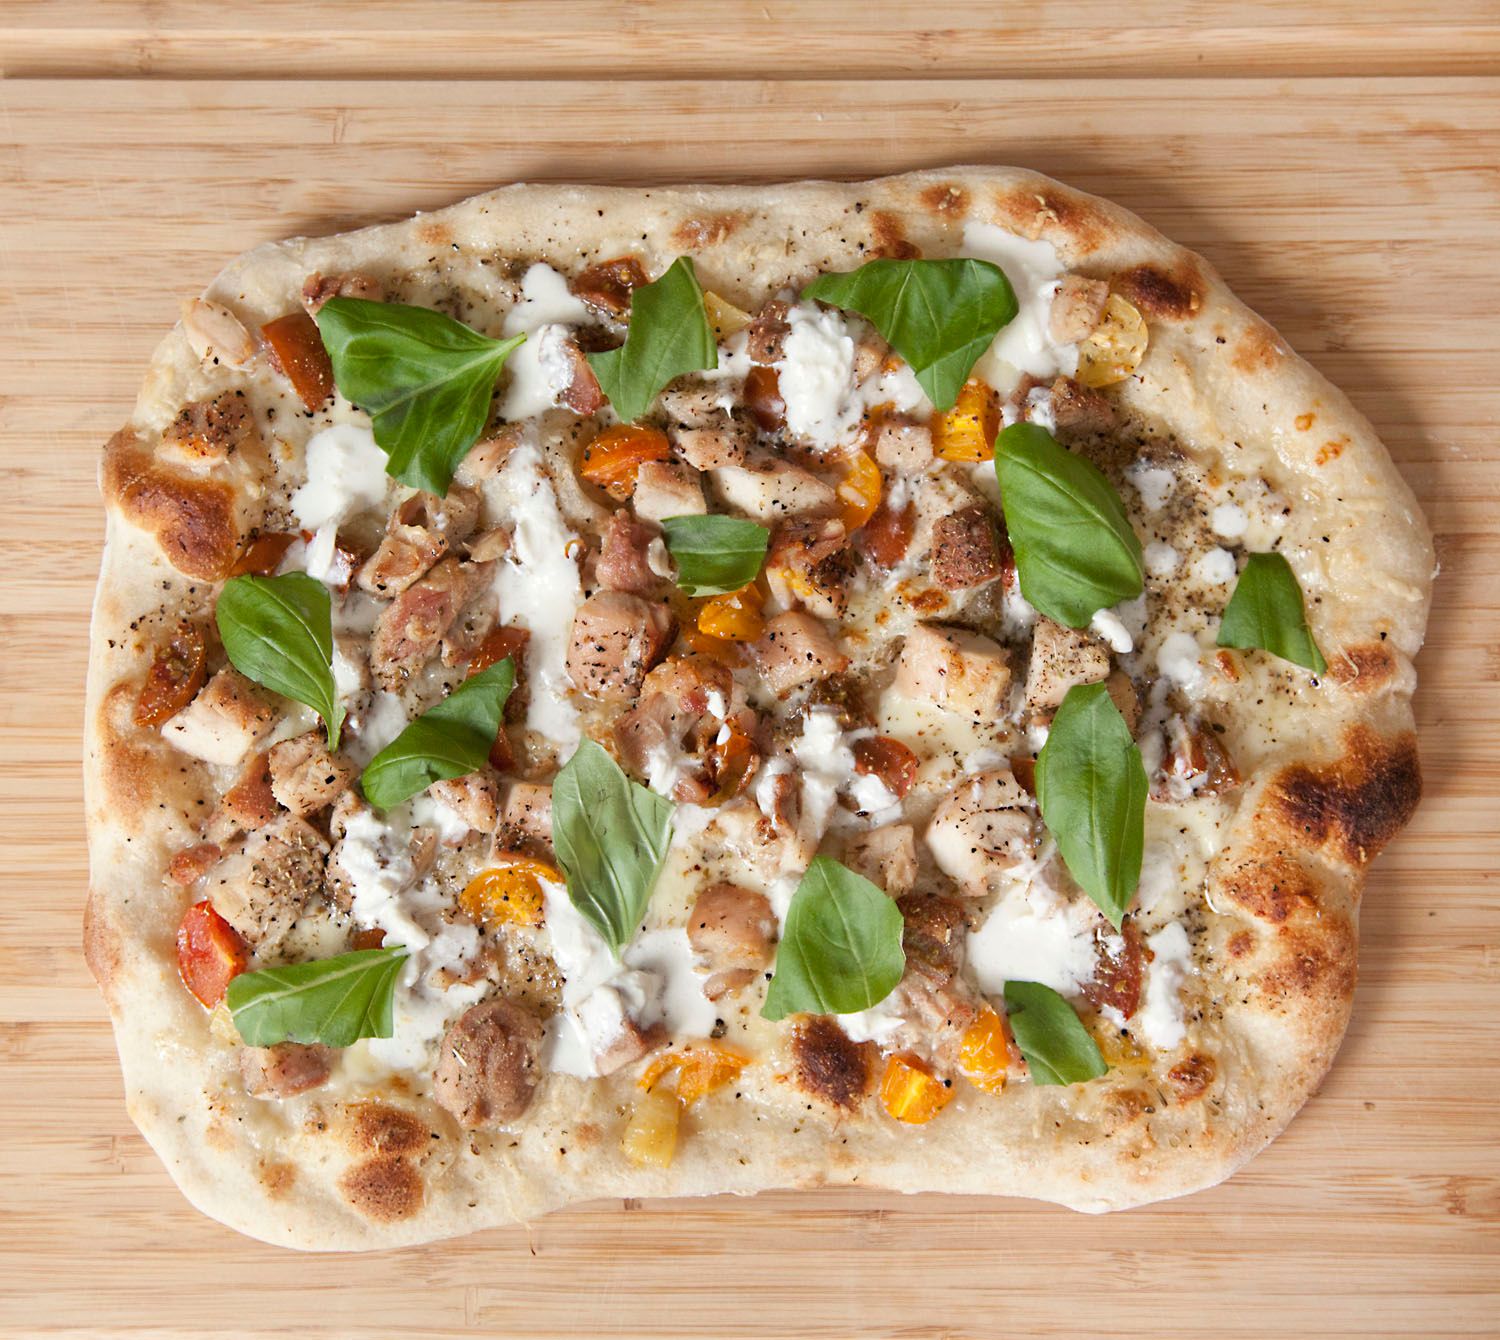 Sourdough White Pizza with Chicken, Tomato & Basil